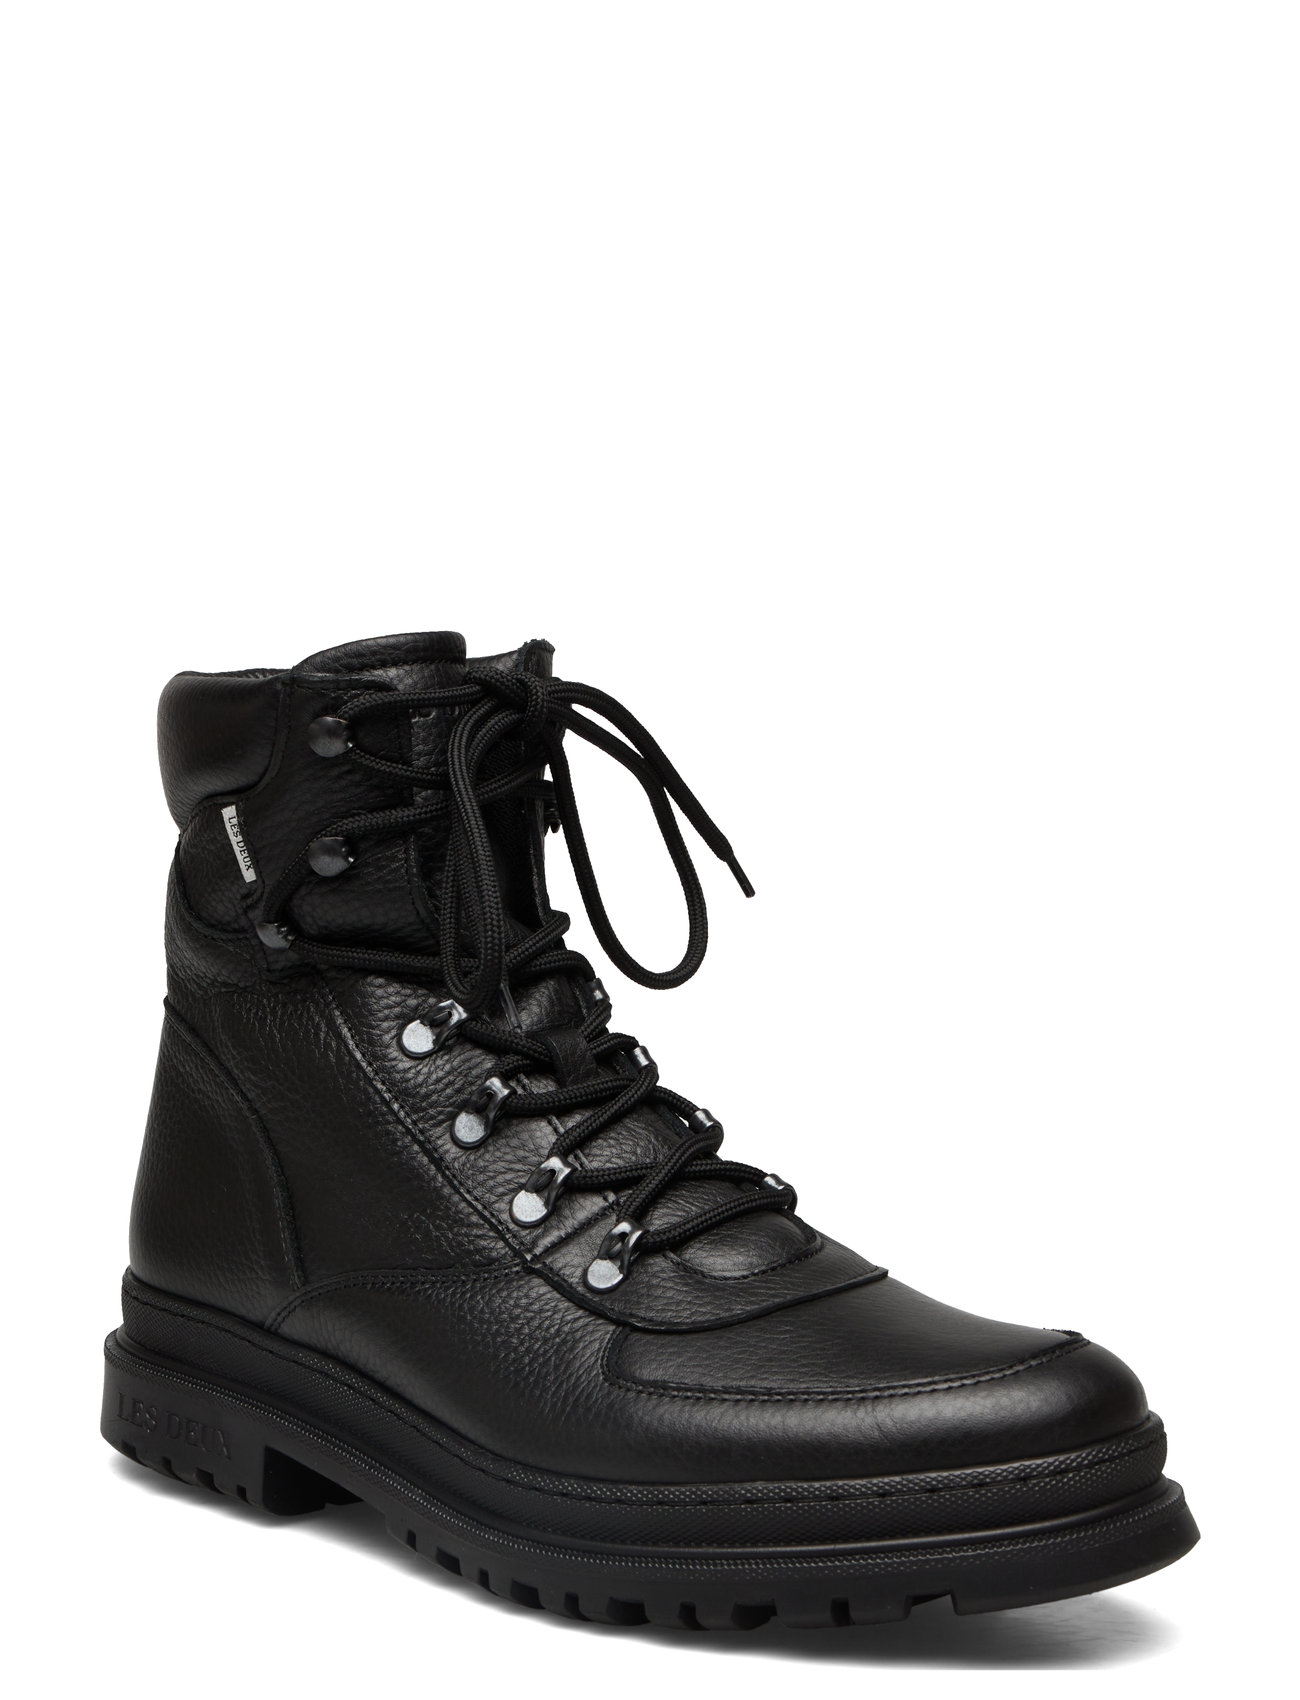 Les Deux Tyler Leather Desert Boot (Black/Sort) - 799 kr | Boozt.com